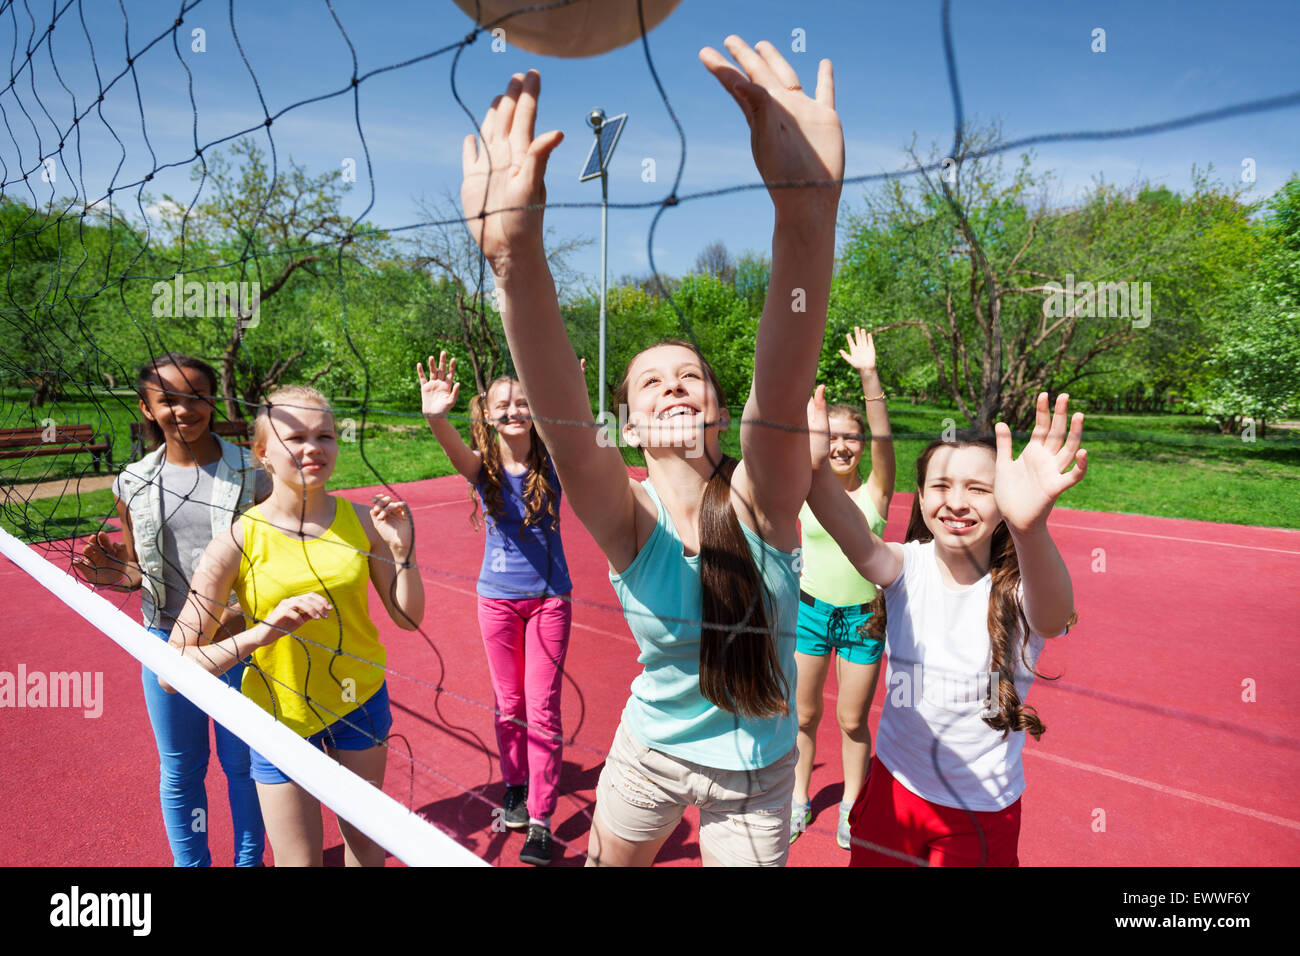 L'équipe d'adolescents jouer au volley-ball sur la cour Banque D'Images